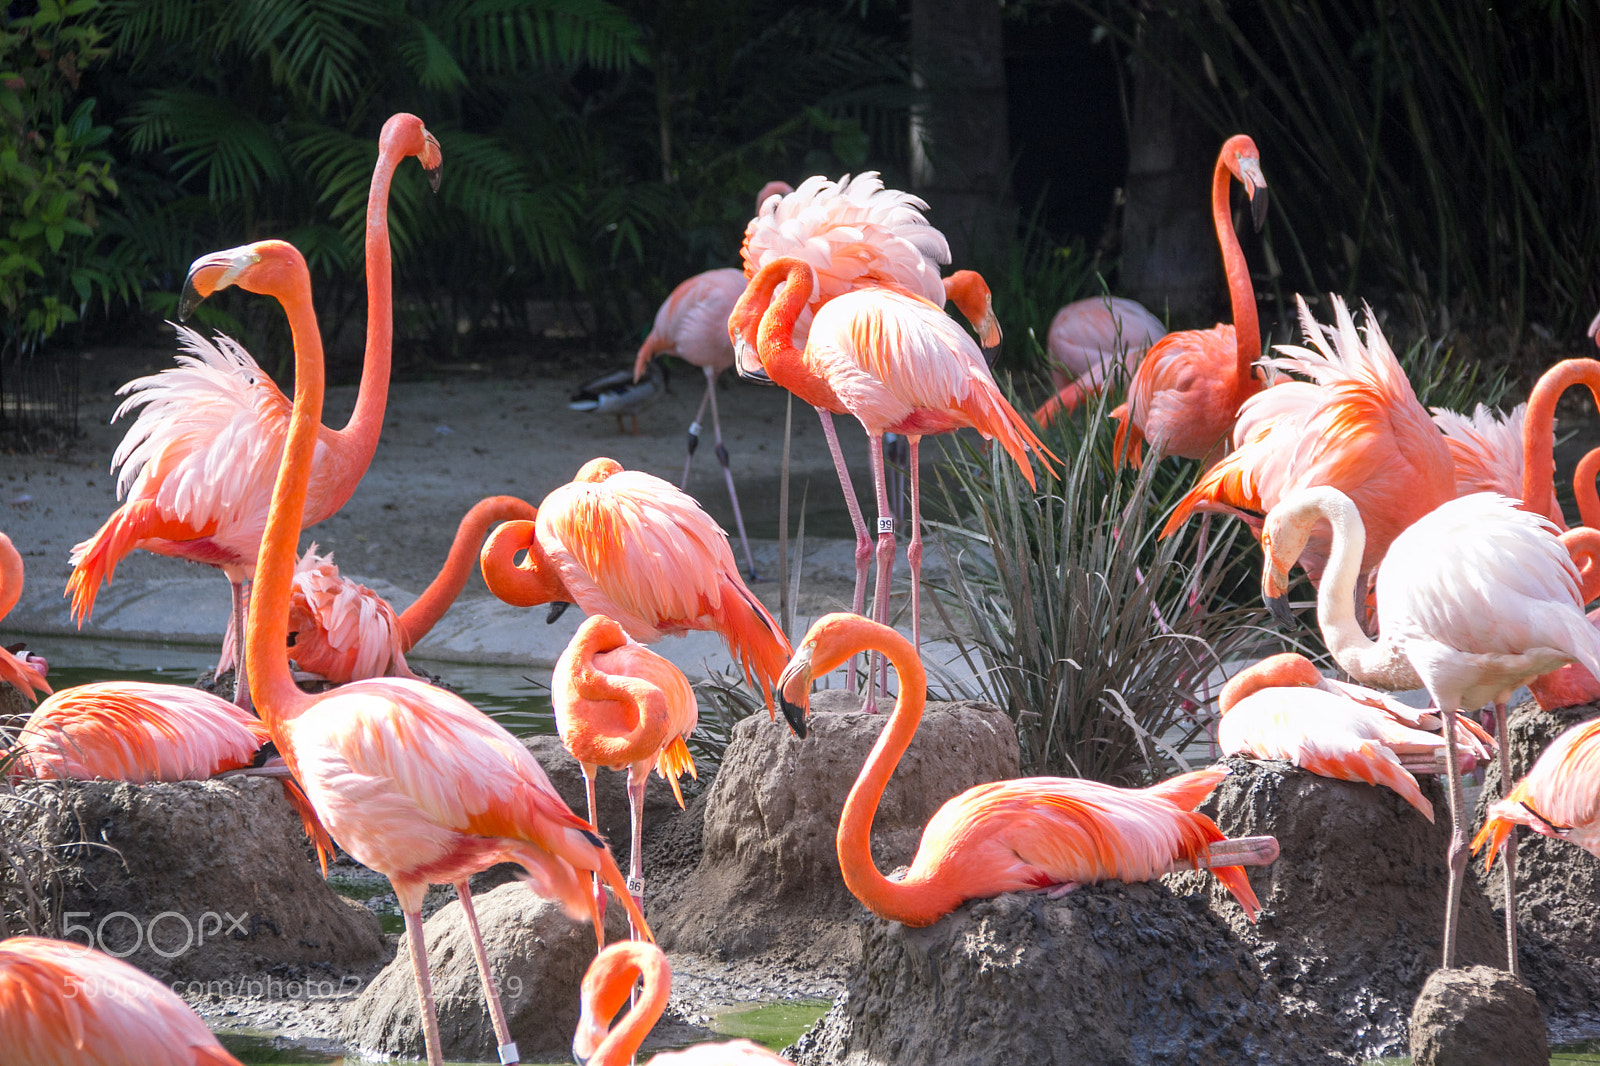 Canon EOS 60D sample photo. All the flamingos photography